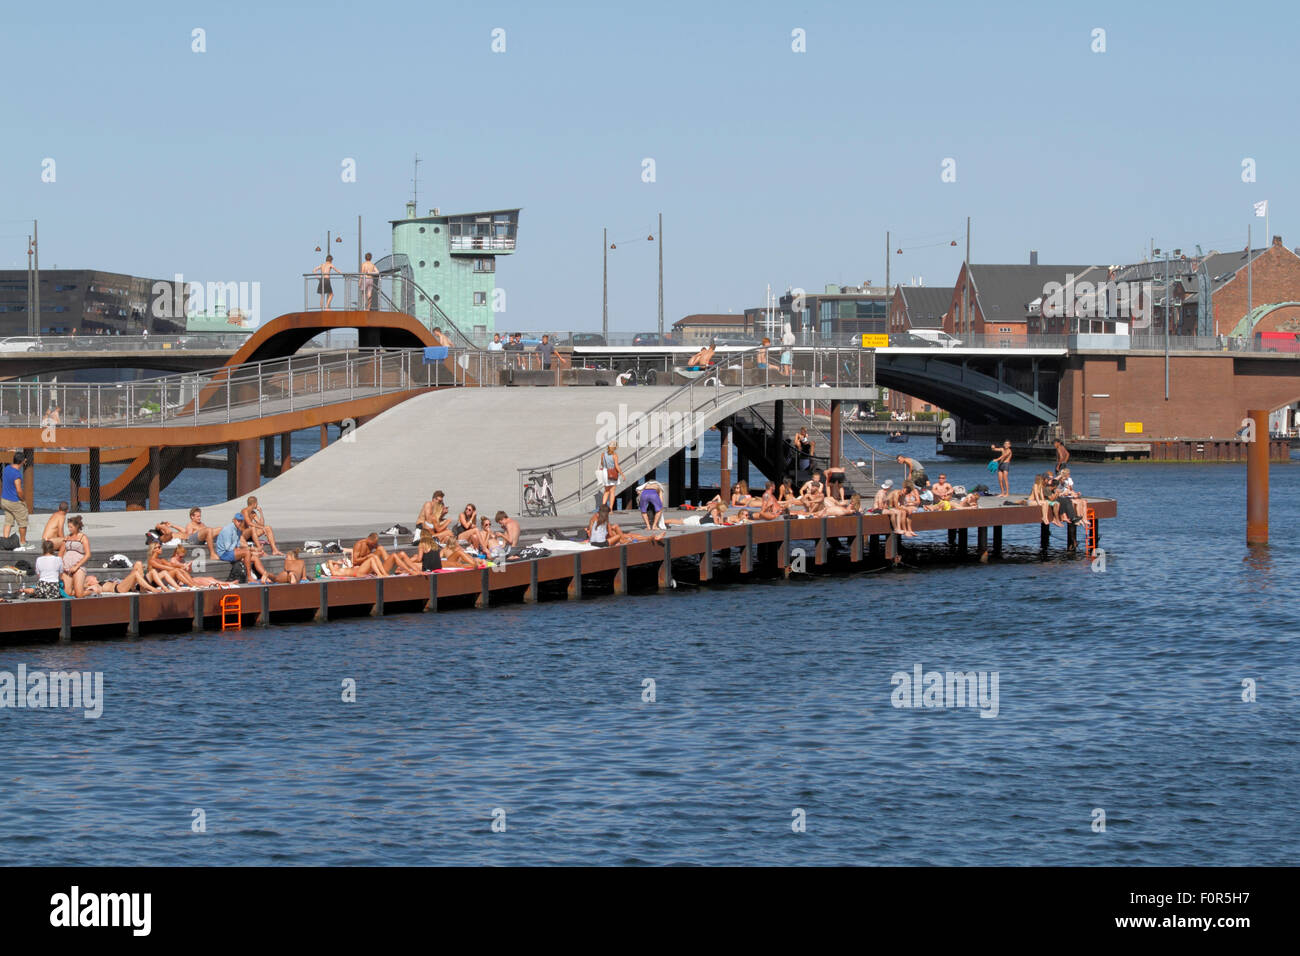 Kalvebod Bølge, Kalvebod Waves, nel porto interno di Copenhagen. Un'eccitante struttura del molo che svetta su e giù a Kalvebod Brygge. Immersione alta. Foto Stock